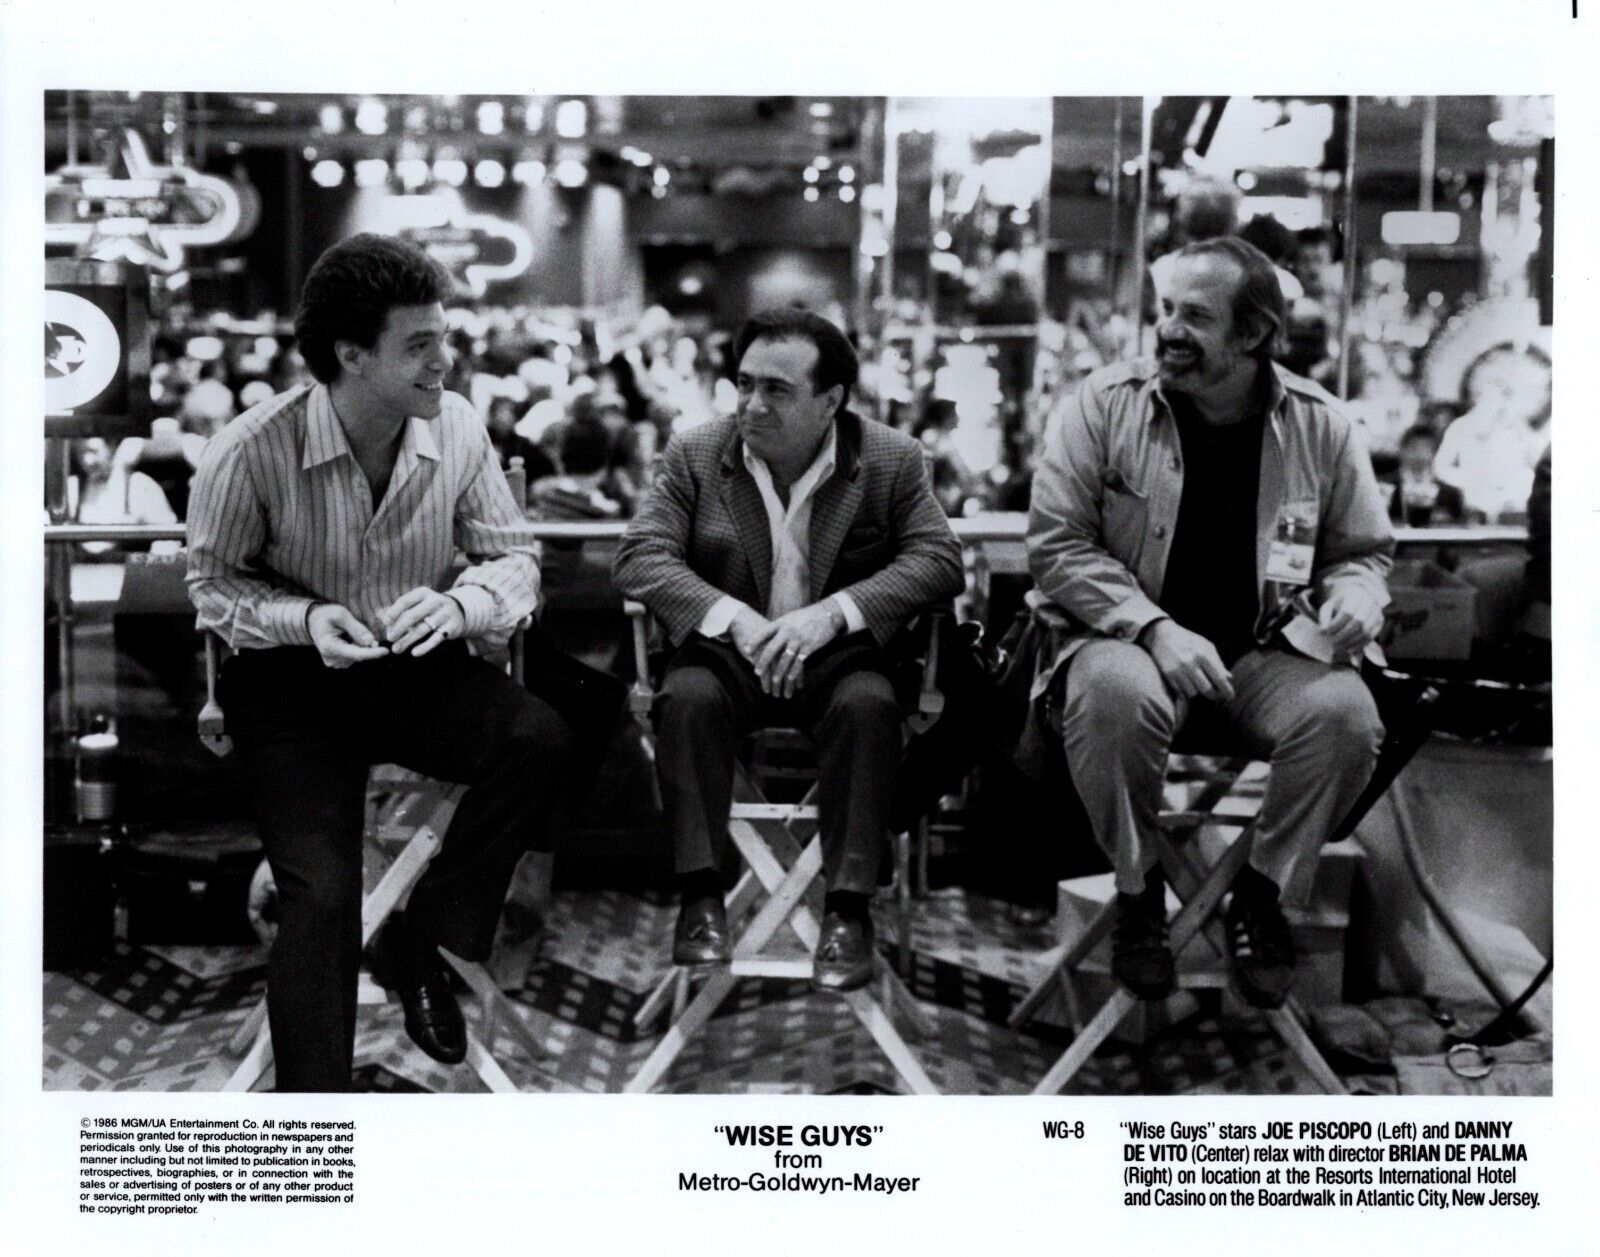 Danny DeVito + Joe Piscopo + Director Brian De Palma (1986) 🎬⭐ MGM Photo K 467